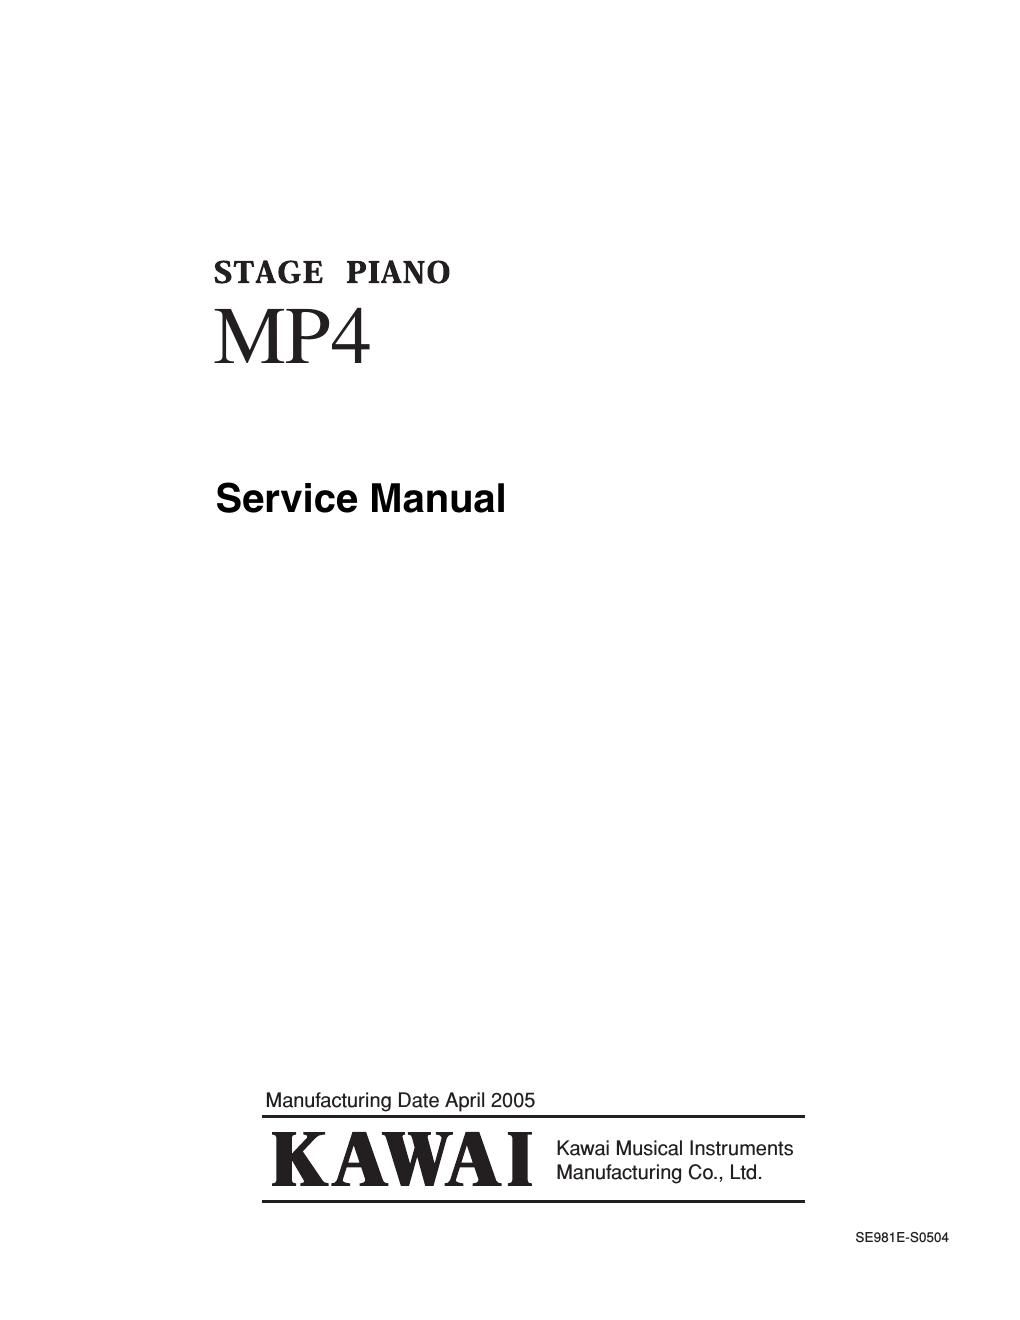 kawai mp4 service manual